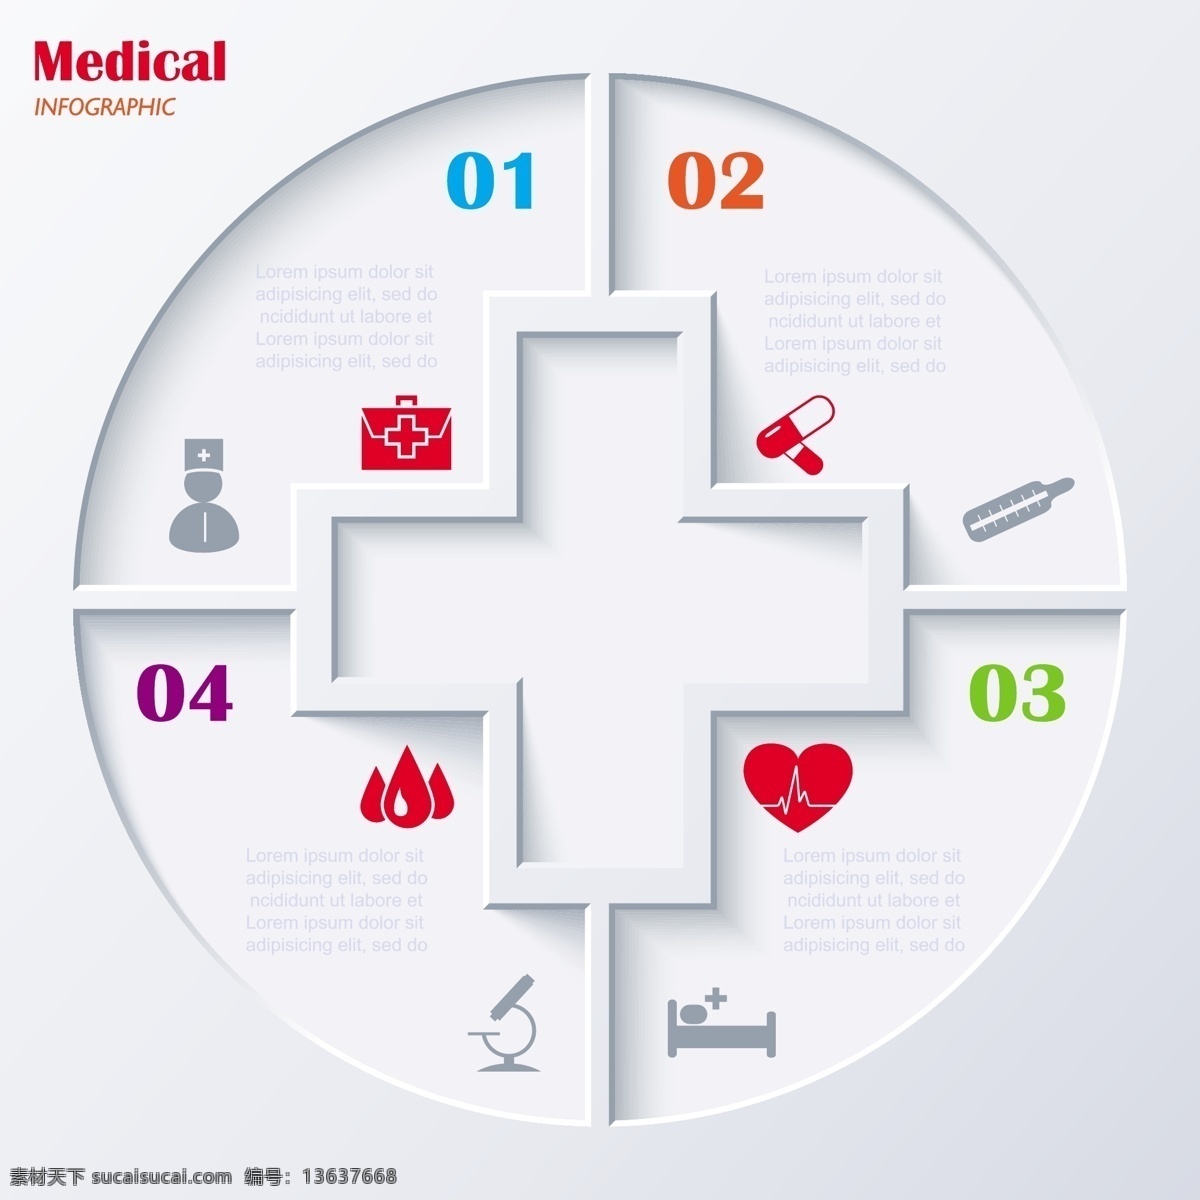 医疗 医疗器材 图表 医学 手绘 背景 医疗保健 矢量 生活百科